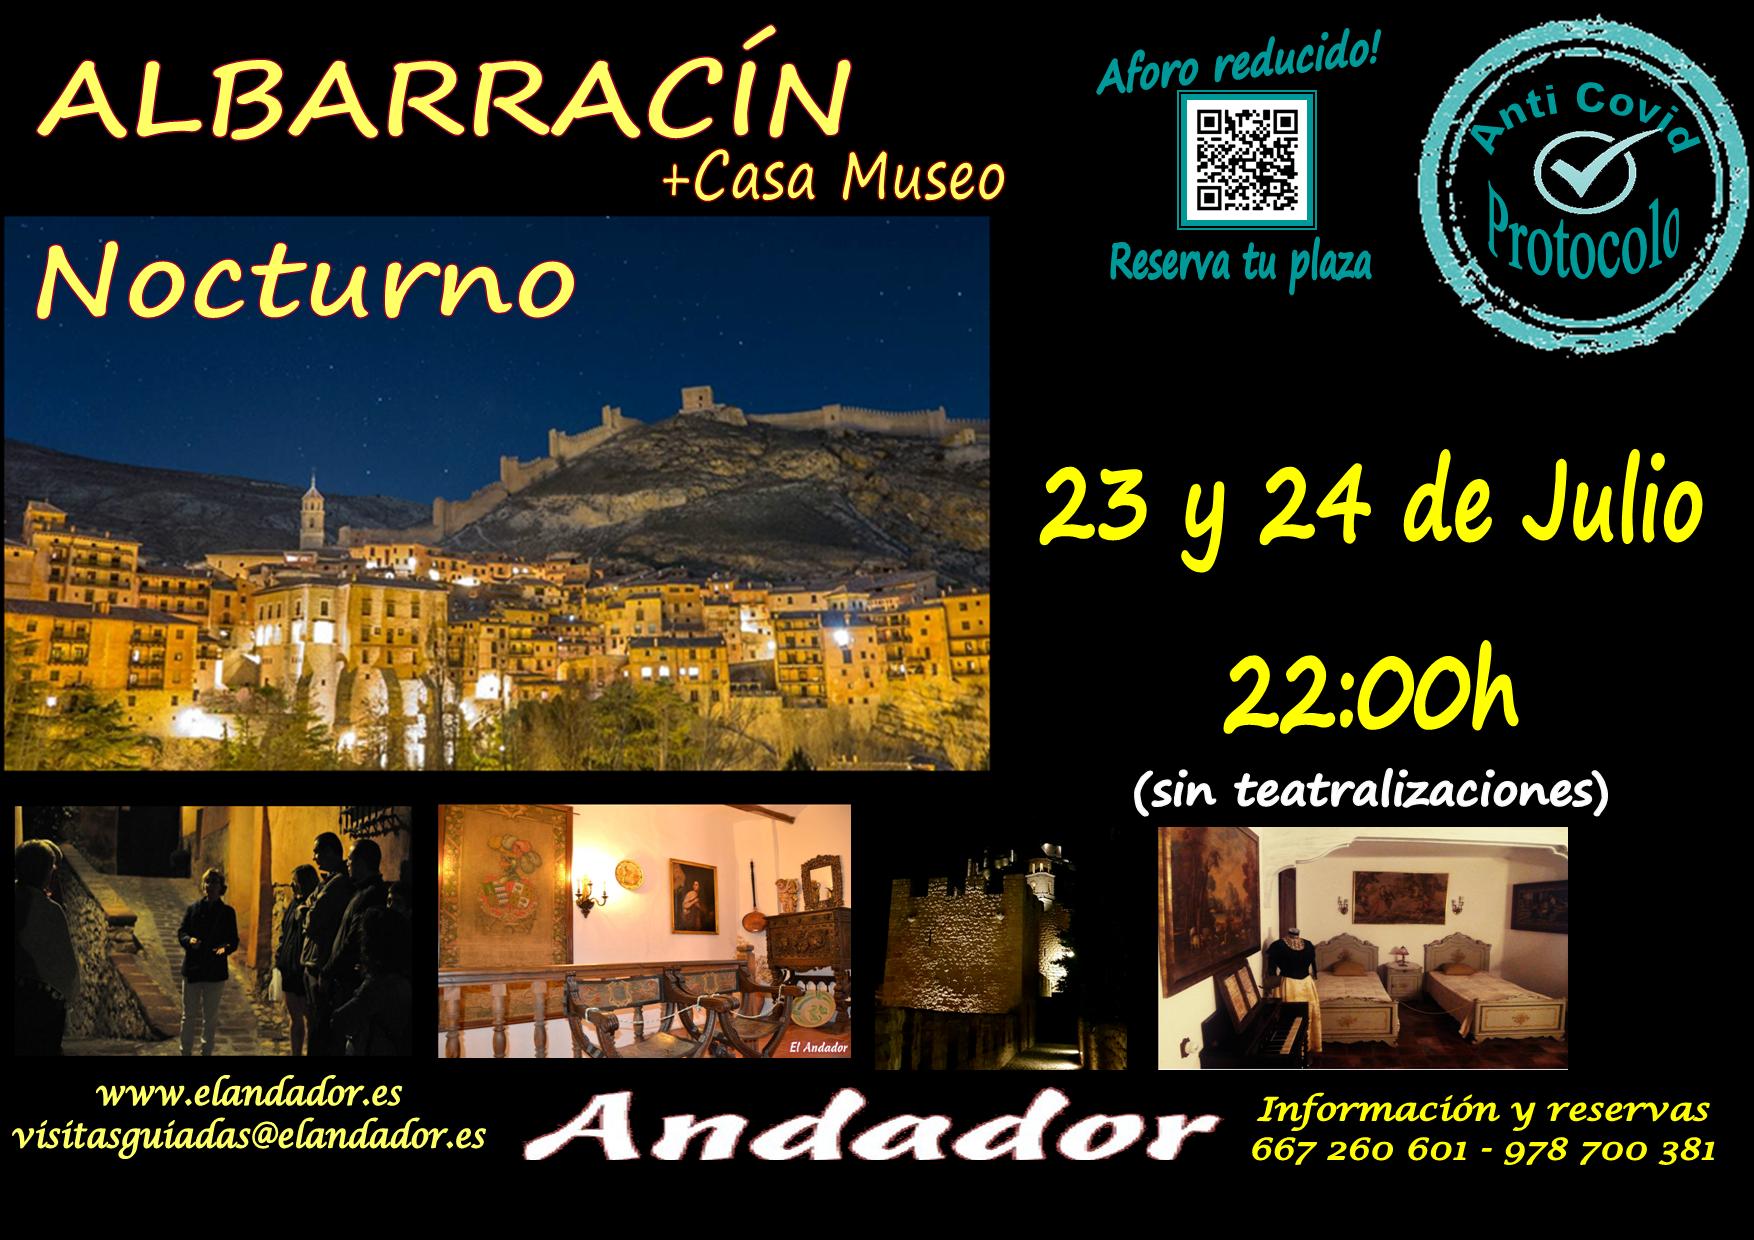 Viernes 23 y Sábado 24… Visita Guiada en Albarracín Nocturno!